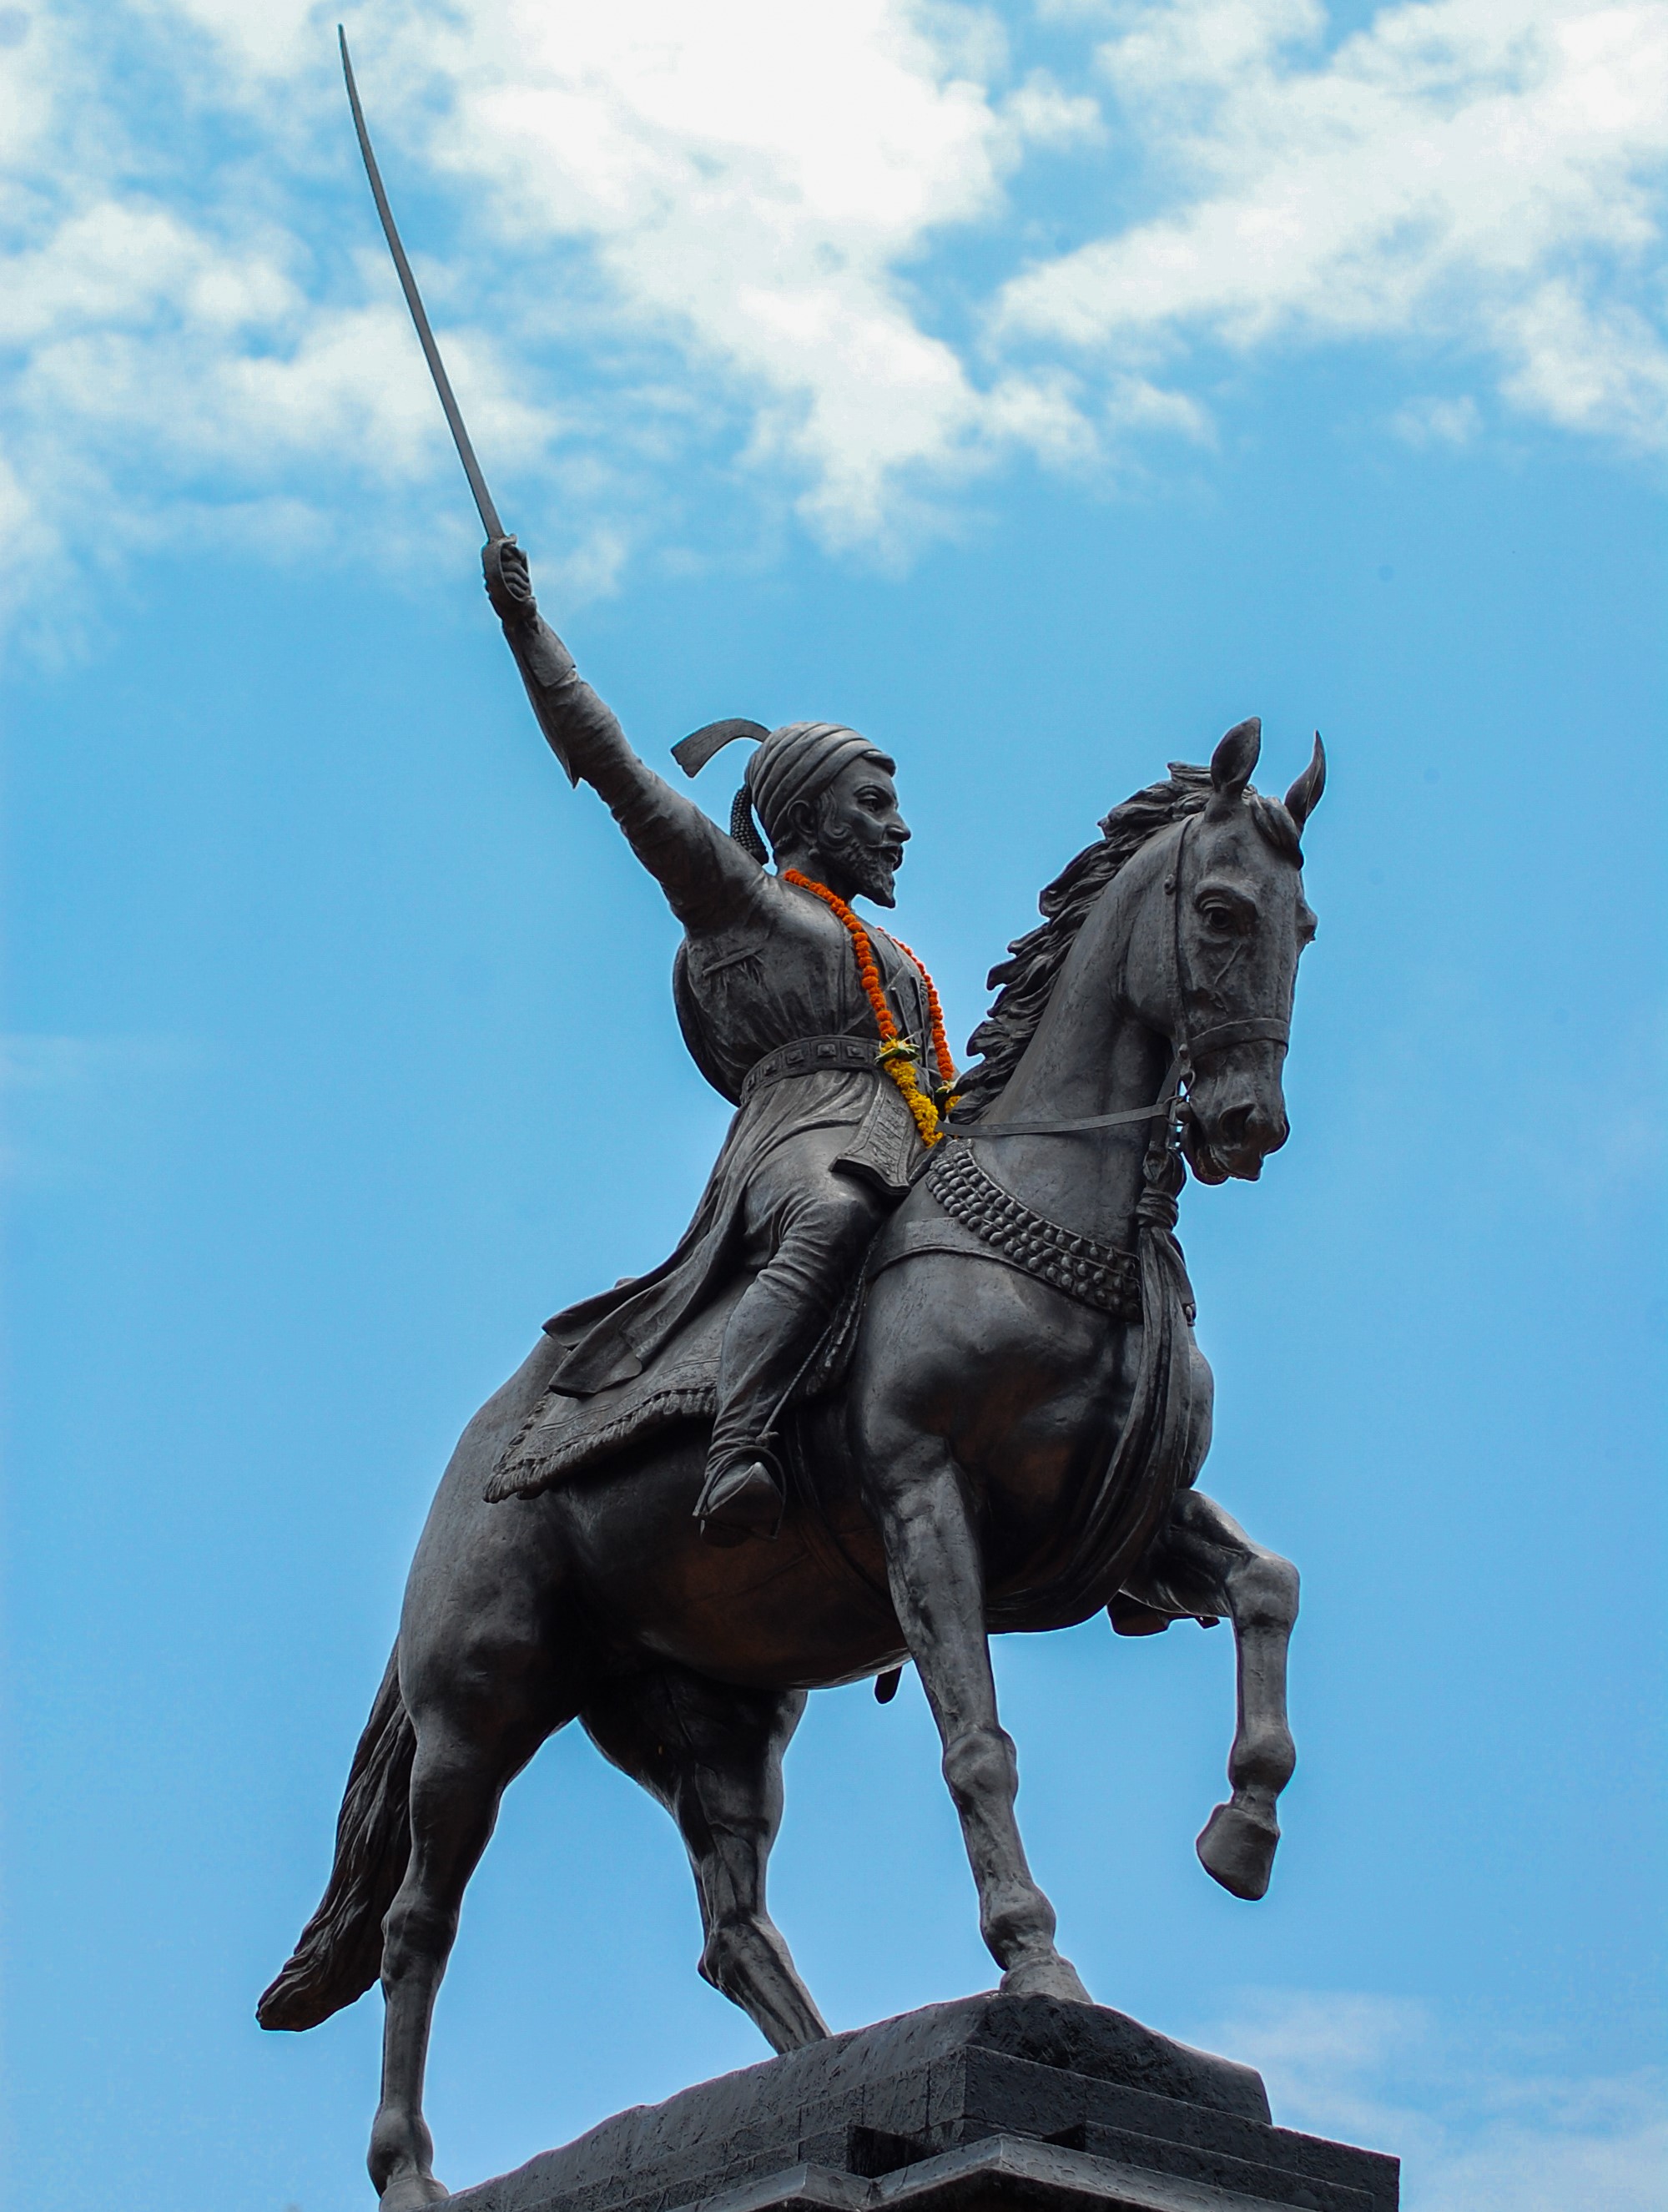 The Impact of Chhatrapati Shivaji Maharaj on the Maratha Empire